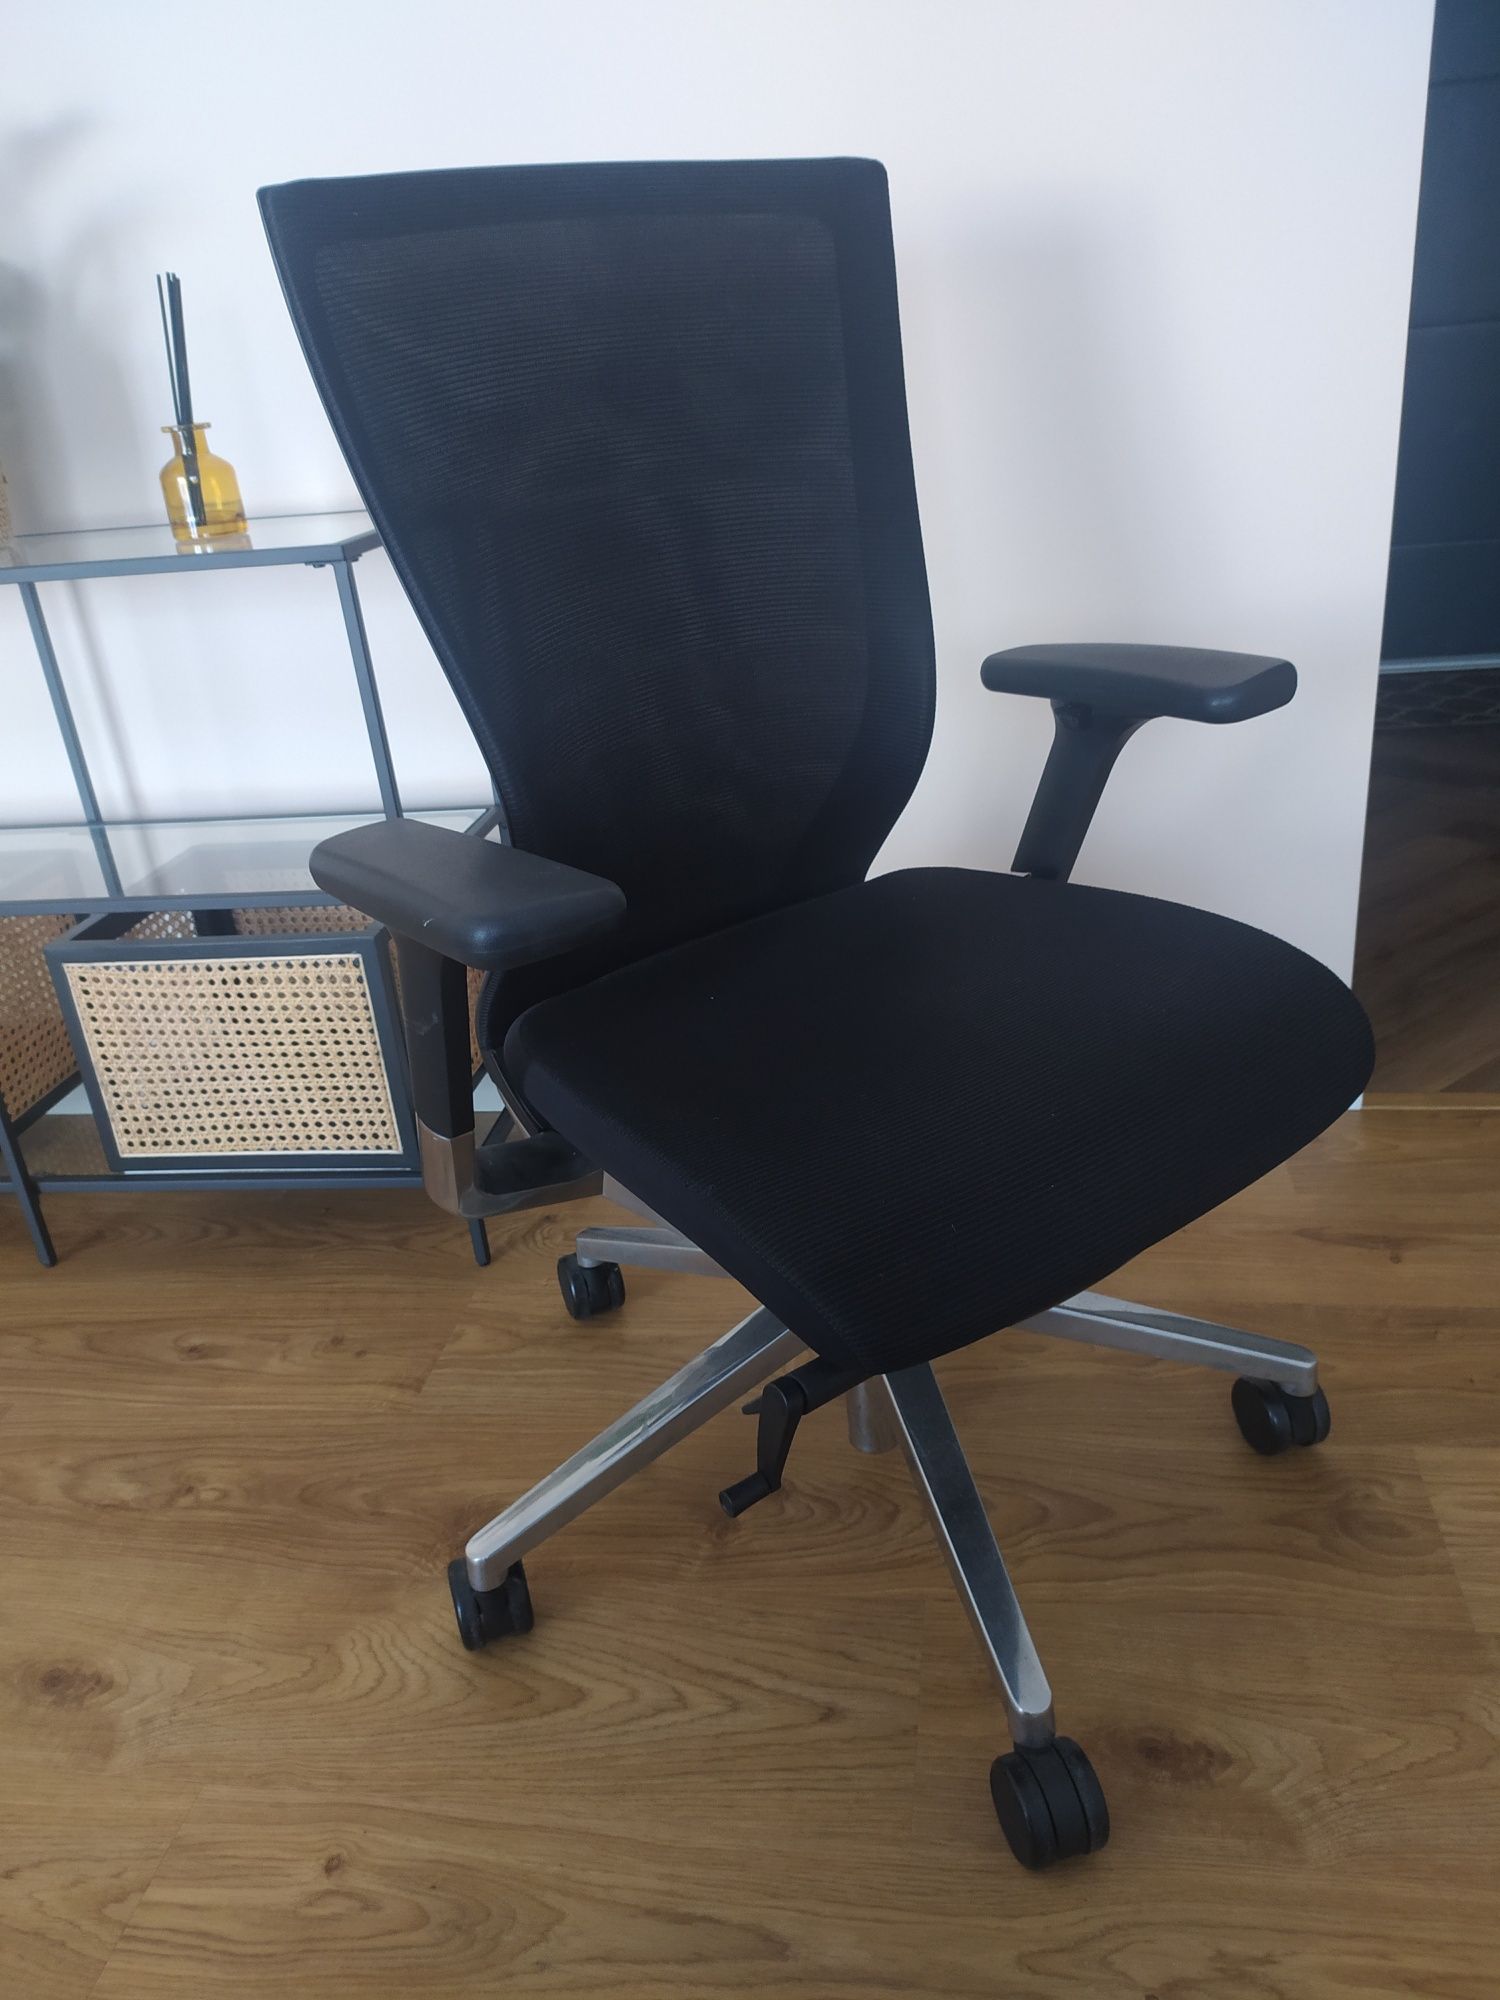 Krzesło fotel biurowy obrotowy SIDIZ T50 ergonomiczny